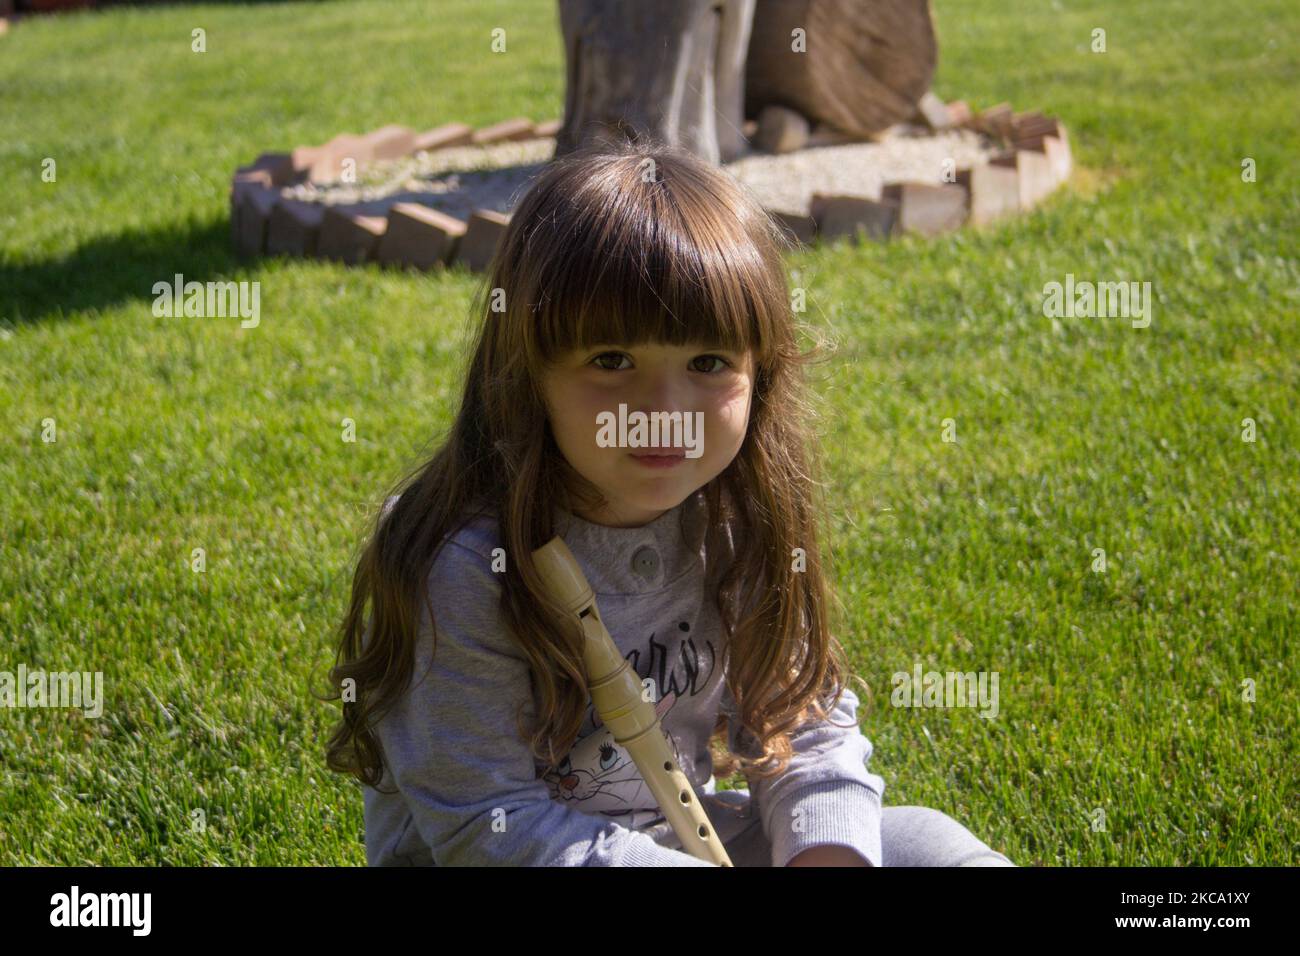 Immagine di un'adorabile bambina sorridente che posa seduta su un prato che tiene un flauto. Giochi educativi per bambini per giocare all'aperto Foto Stock